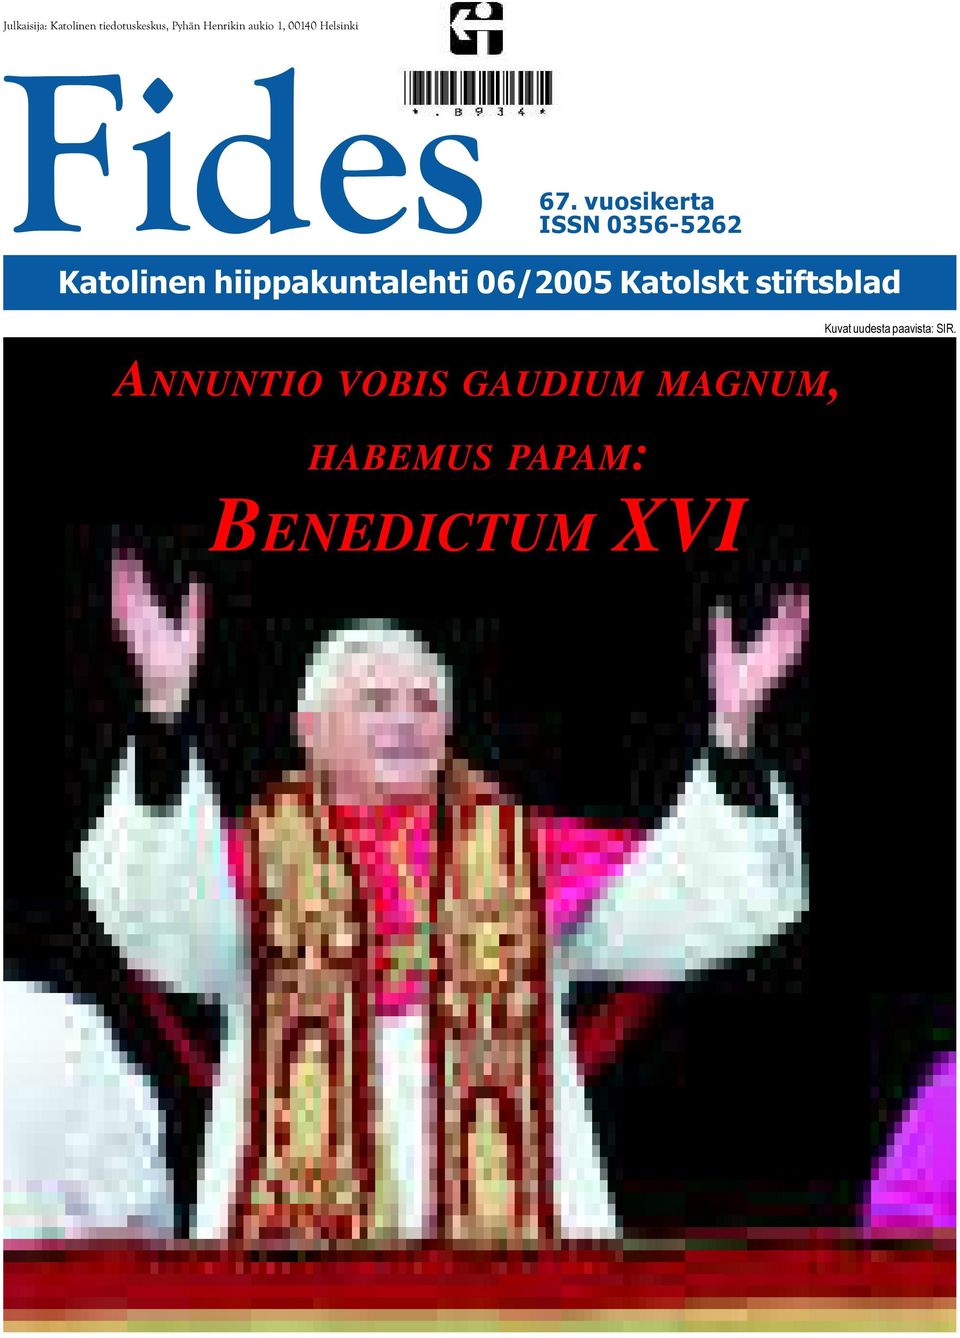 vuosikerta ISSN 0356-5262 Katolinen hiippakuntalehti 06/2005